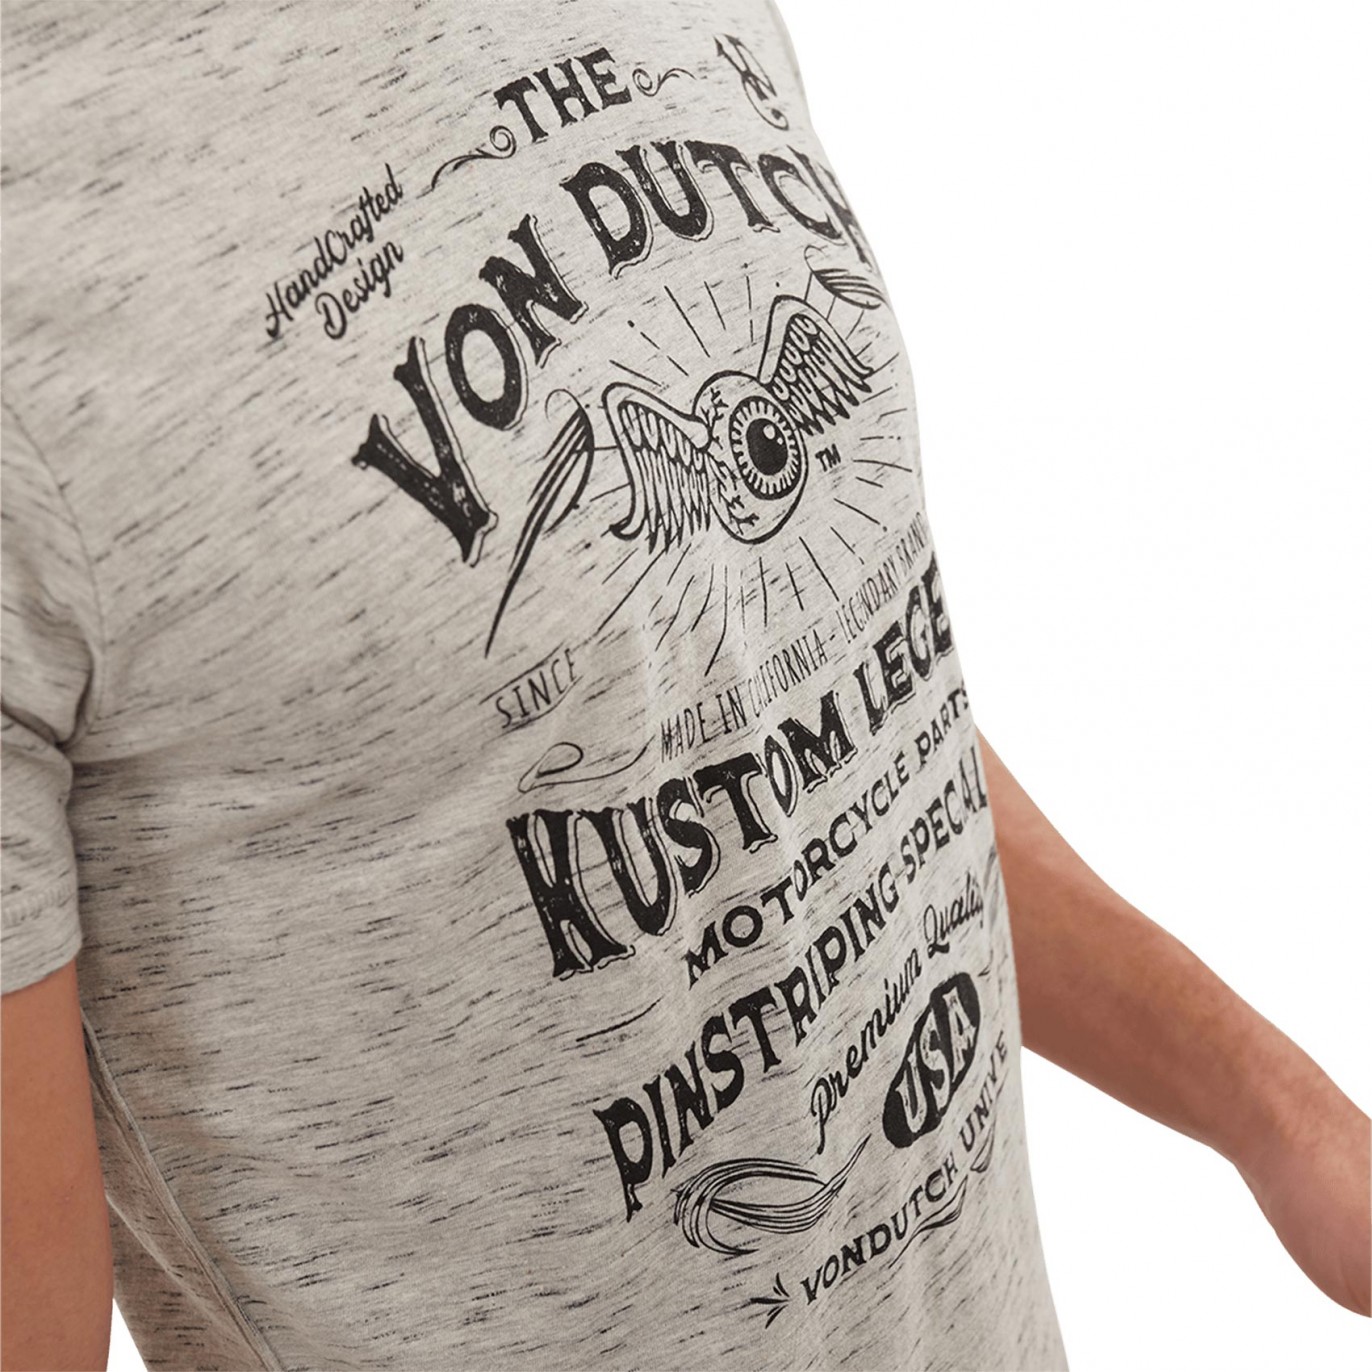 Tee-Shirt Von Dutch Snake Gris - Von Dutch / Tee-shirt / Homme